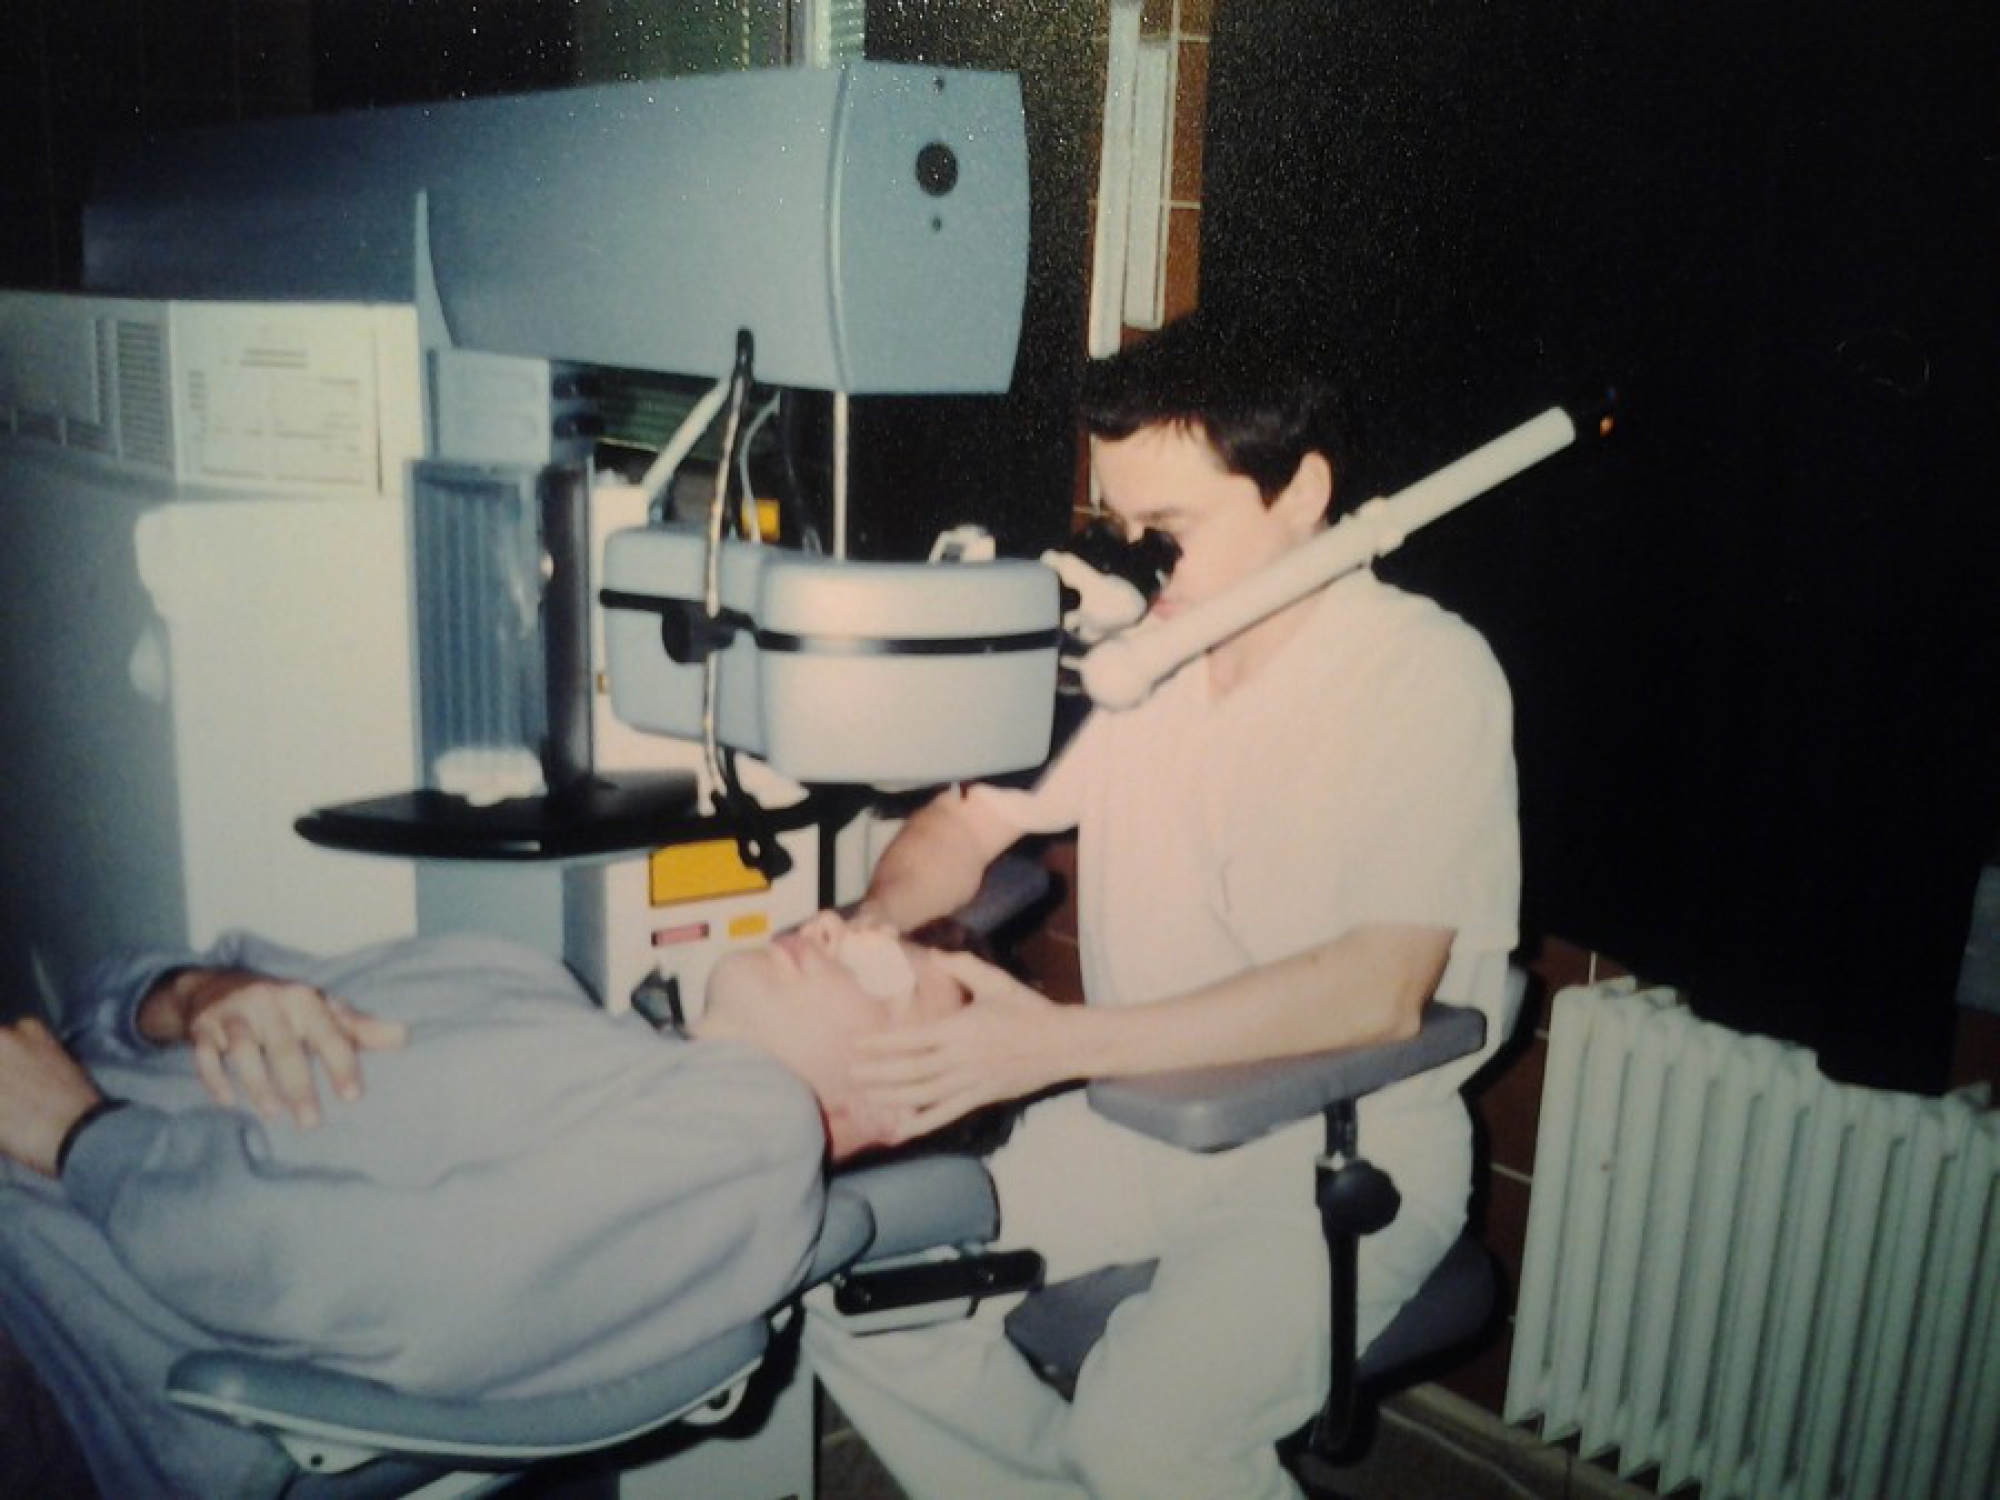 Spomienky na začiatky očnej chirurgie sú pre mňa vždy trochu nostalgické. Bol som mladé ucho, nadšený novými možnosťami a technológiami a šťastný, že môžem byť pri tom. Opravovať ľuďom oči je malý zázrak.